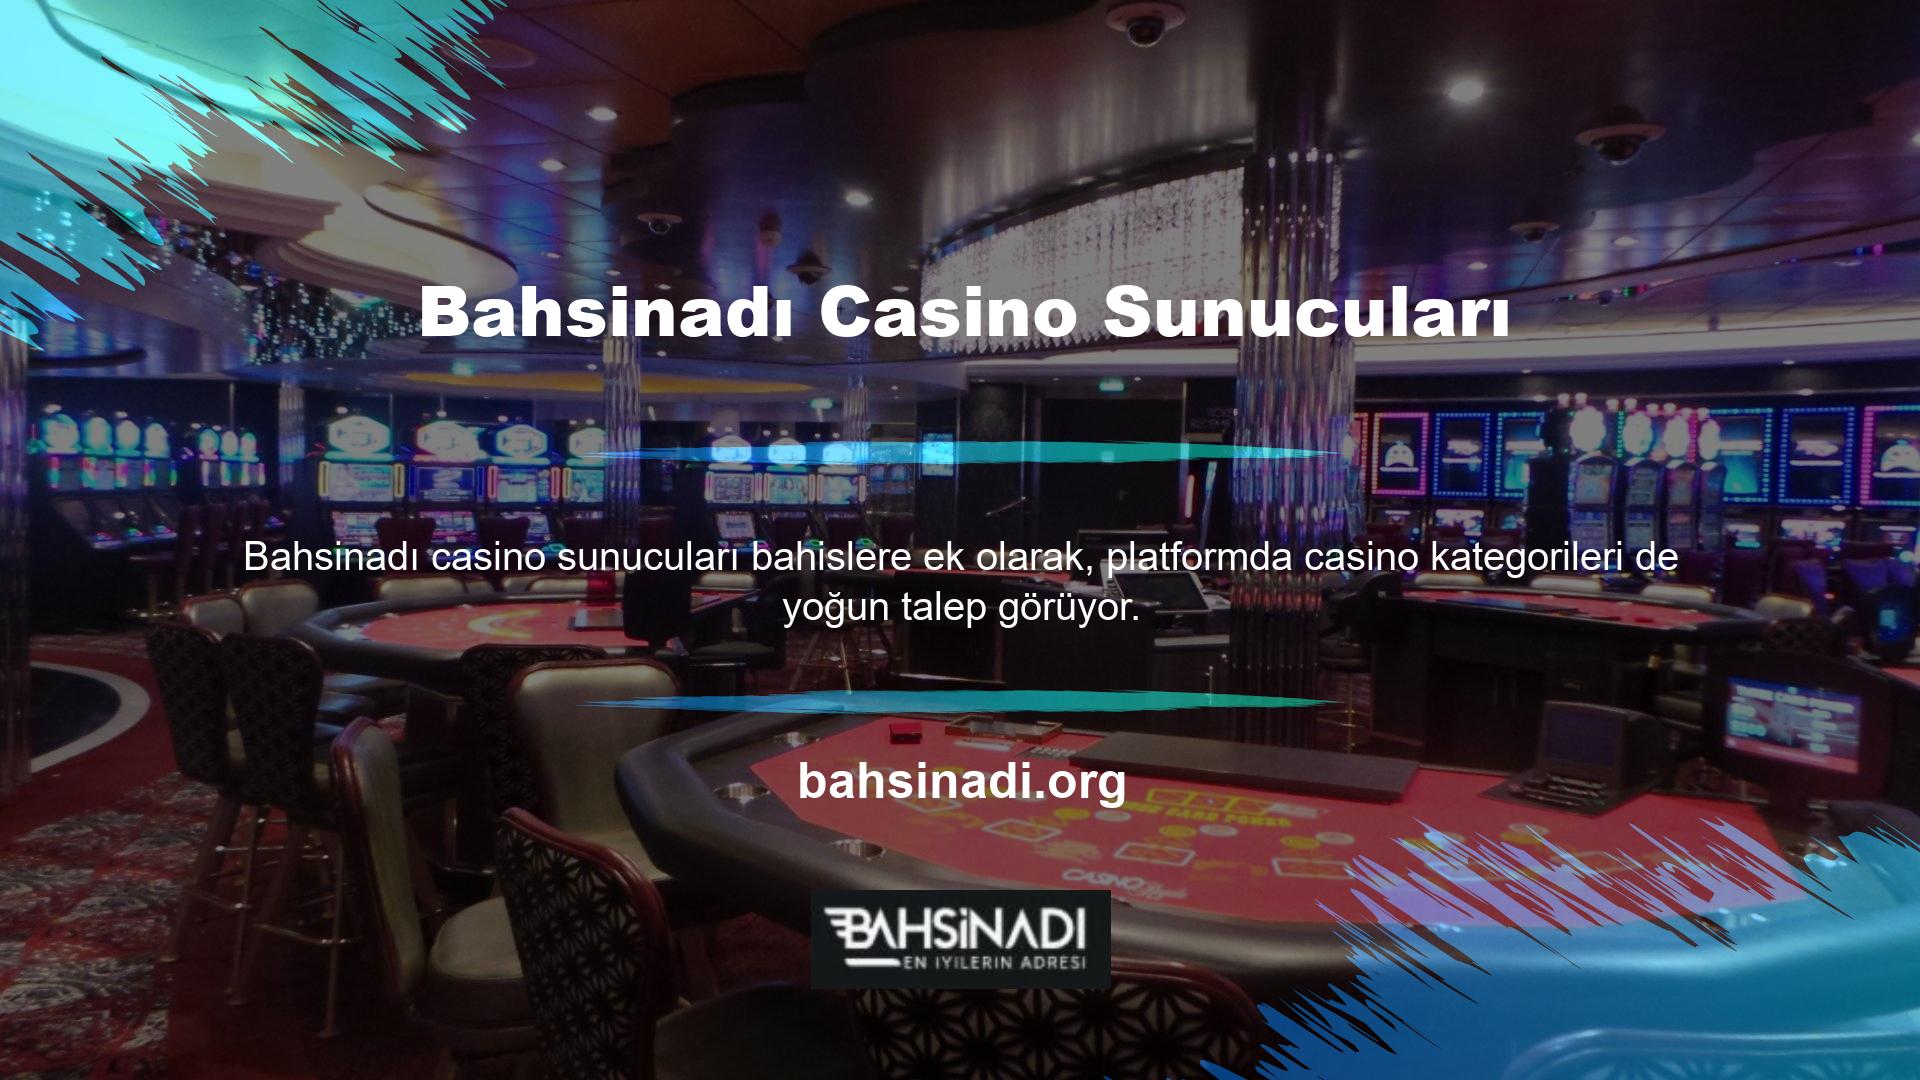 Canlı casino bölümünde, kullanıcılara gerçekçi bir deneyim sunan ilginç bulunur